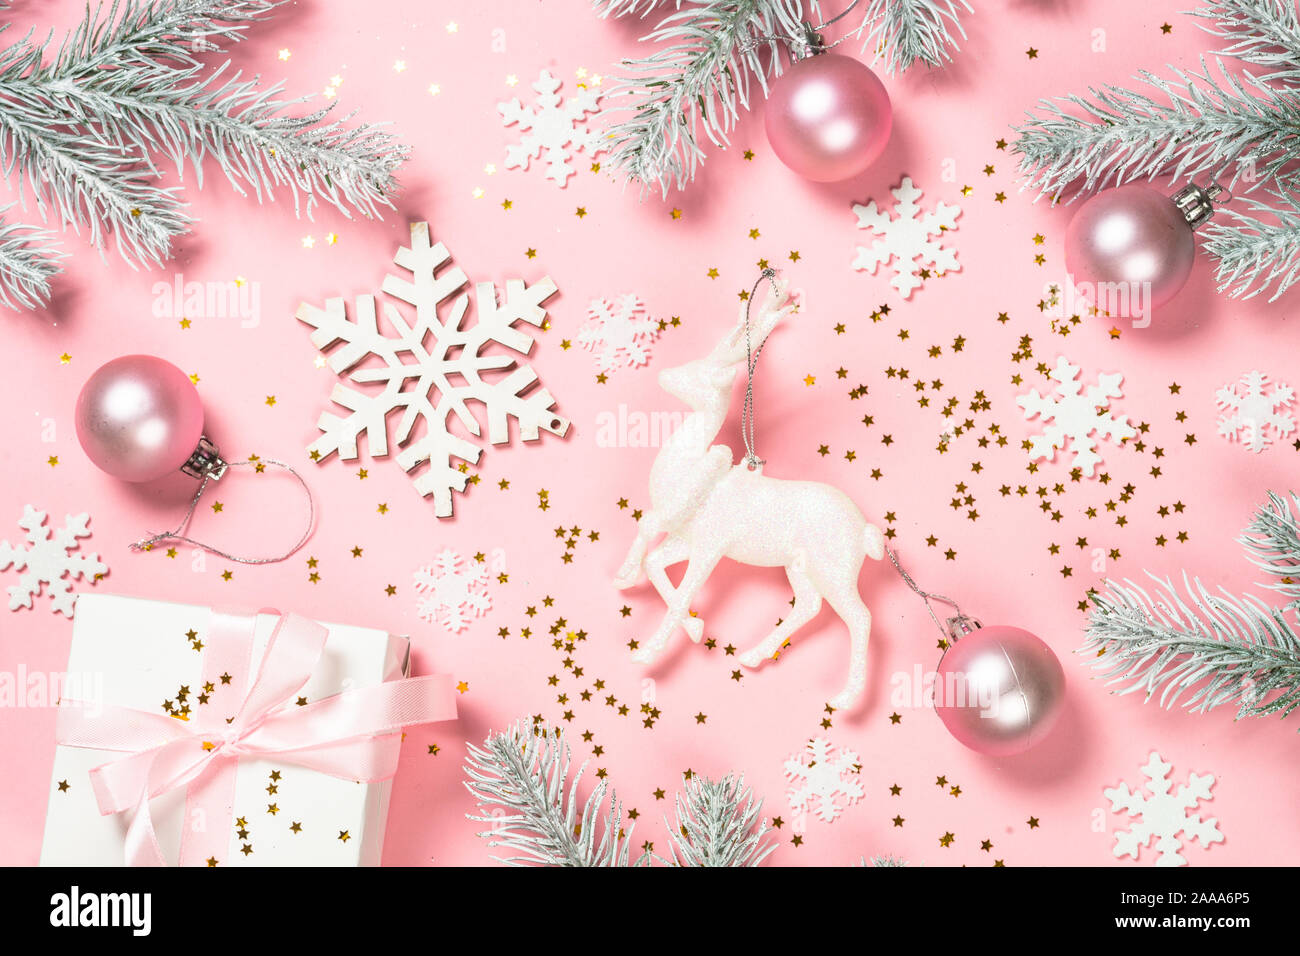 Đừng bỏ qua hình ảnh nền phẳng màu hồng dành cho Giáng sinh - một sự lựa chọn đơn giản nhưng vô cùng đẹp mắt. Sắc hồng nhẹ nhàng cùng hình ảnh các loài hoa hay nhỏ giọt tuyết sẽ mang đến không gian đầy mơ mộng và lãng mạn.